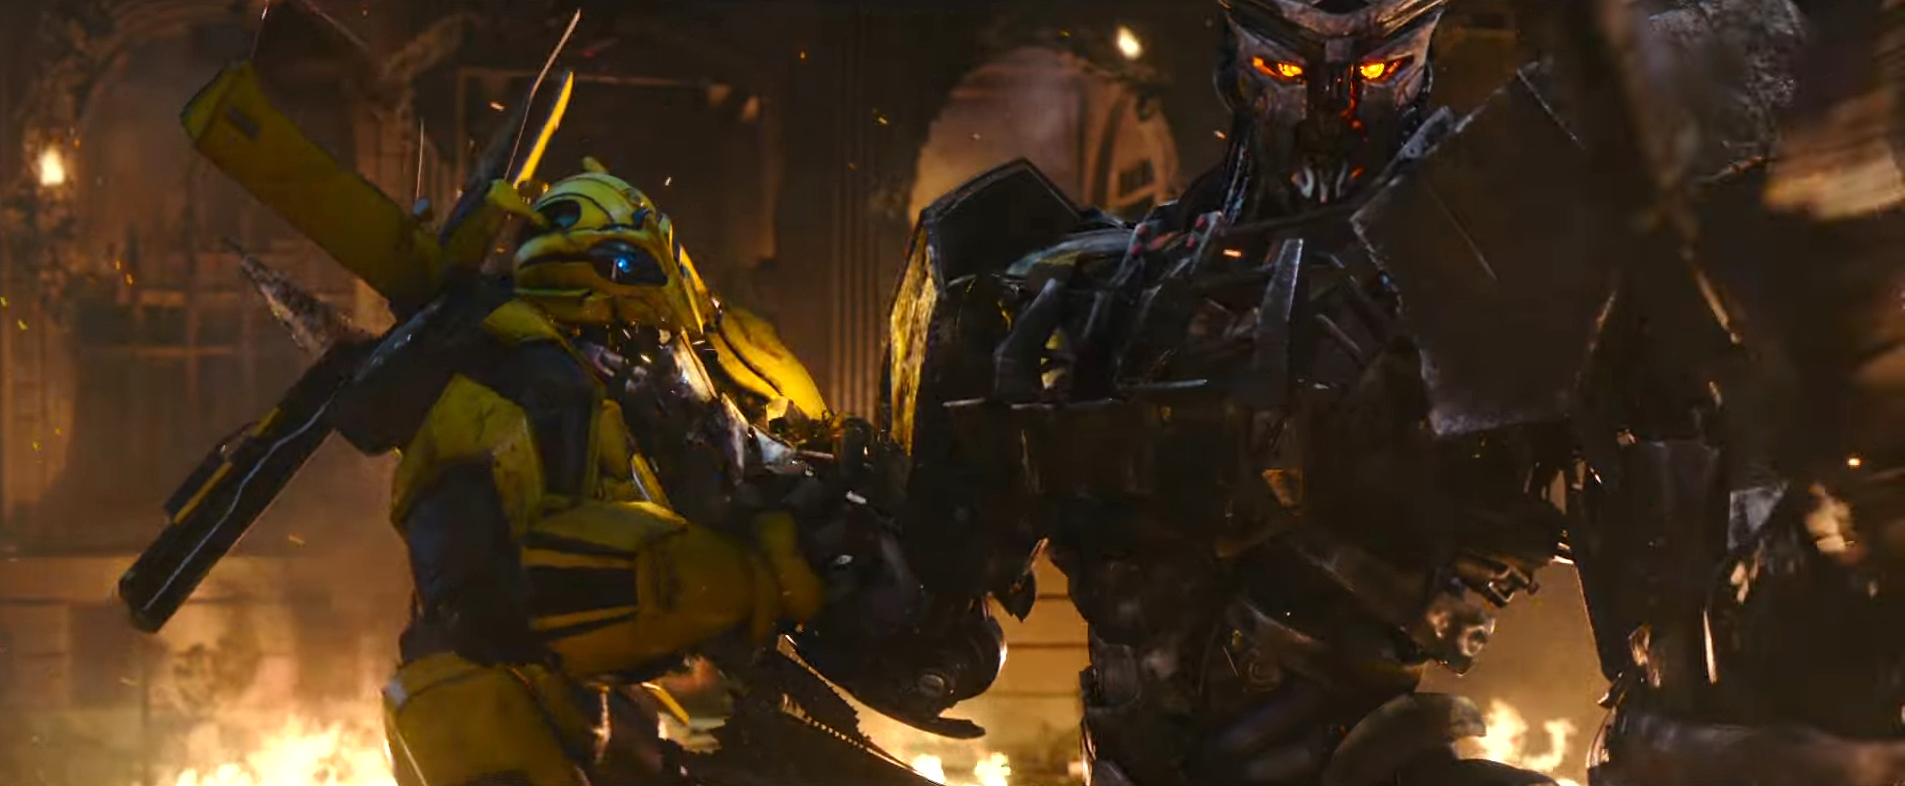 Nghẹt thở với đại chiến robot quái thú khổng lồ trong trailer Transformers: Rise of the Beasts - Ảnh 9.